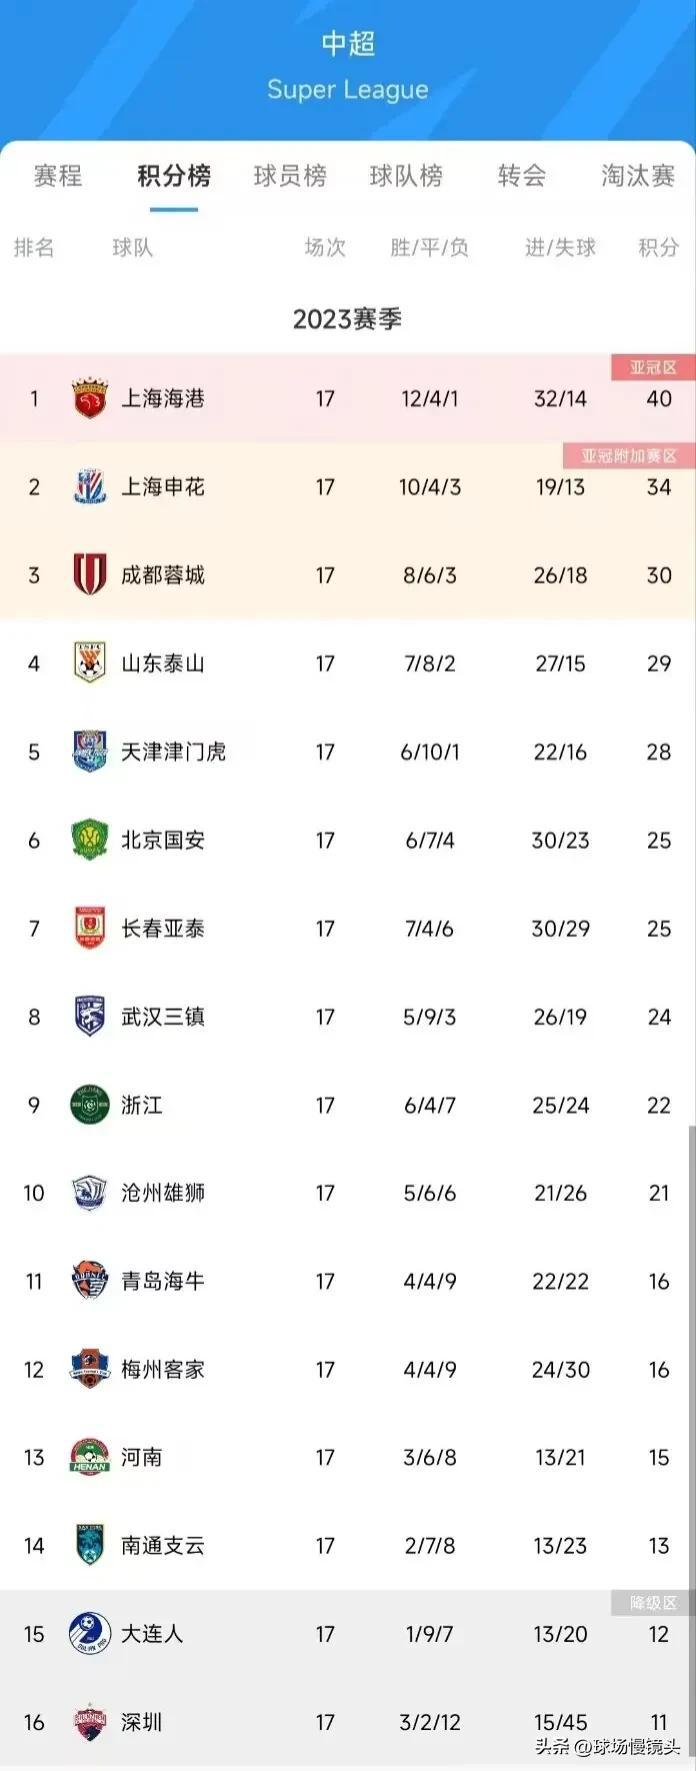 中超17轮结束，各队有话说——

1，上海上港——跟我说争冠，下个赛季吧！
2，(1)